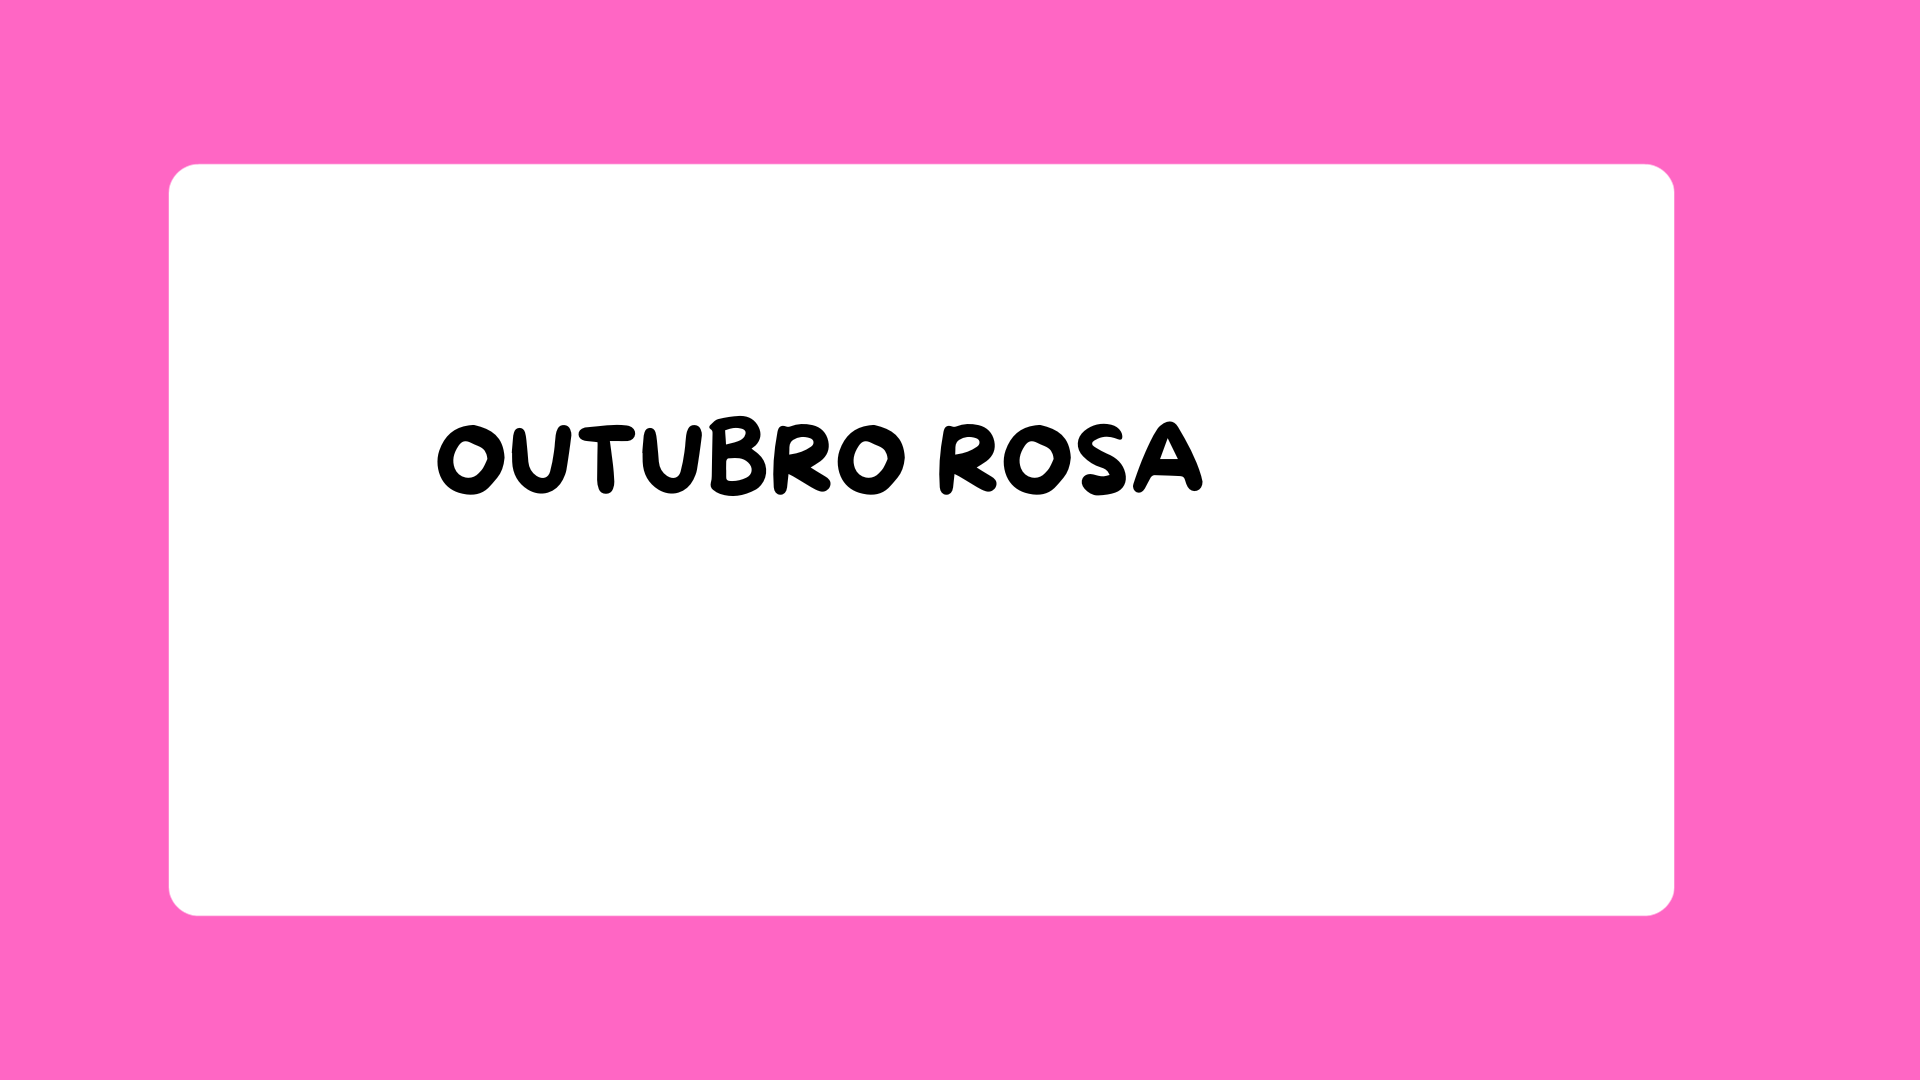 IMAGEM_-_OUTUBRO_ROSA-capa.png